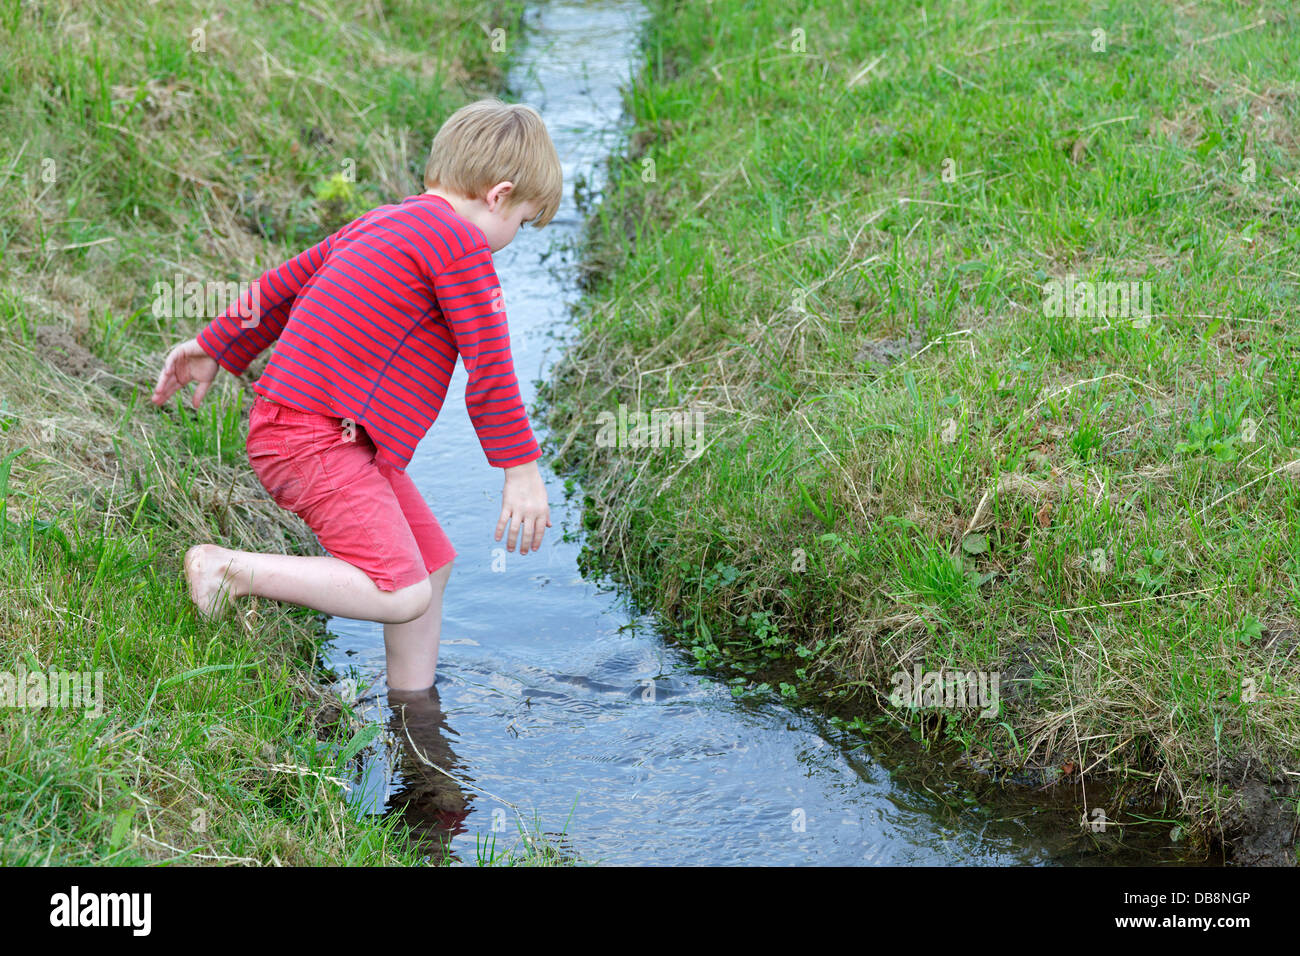 young boy wading through a stream Stock Photo